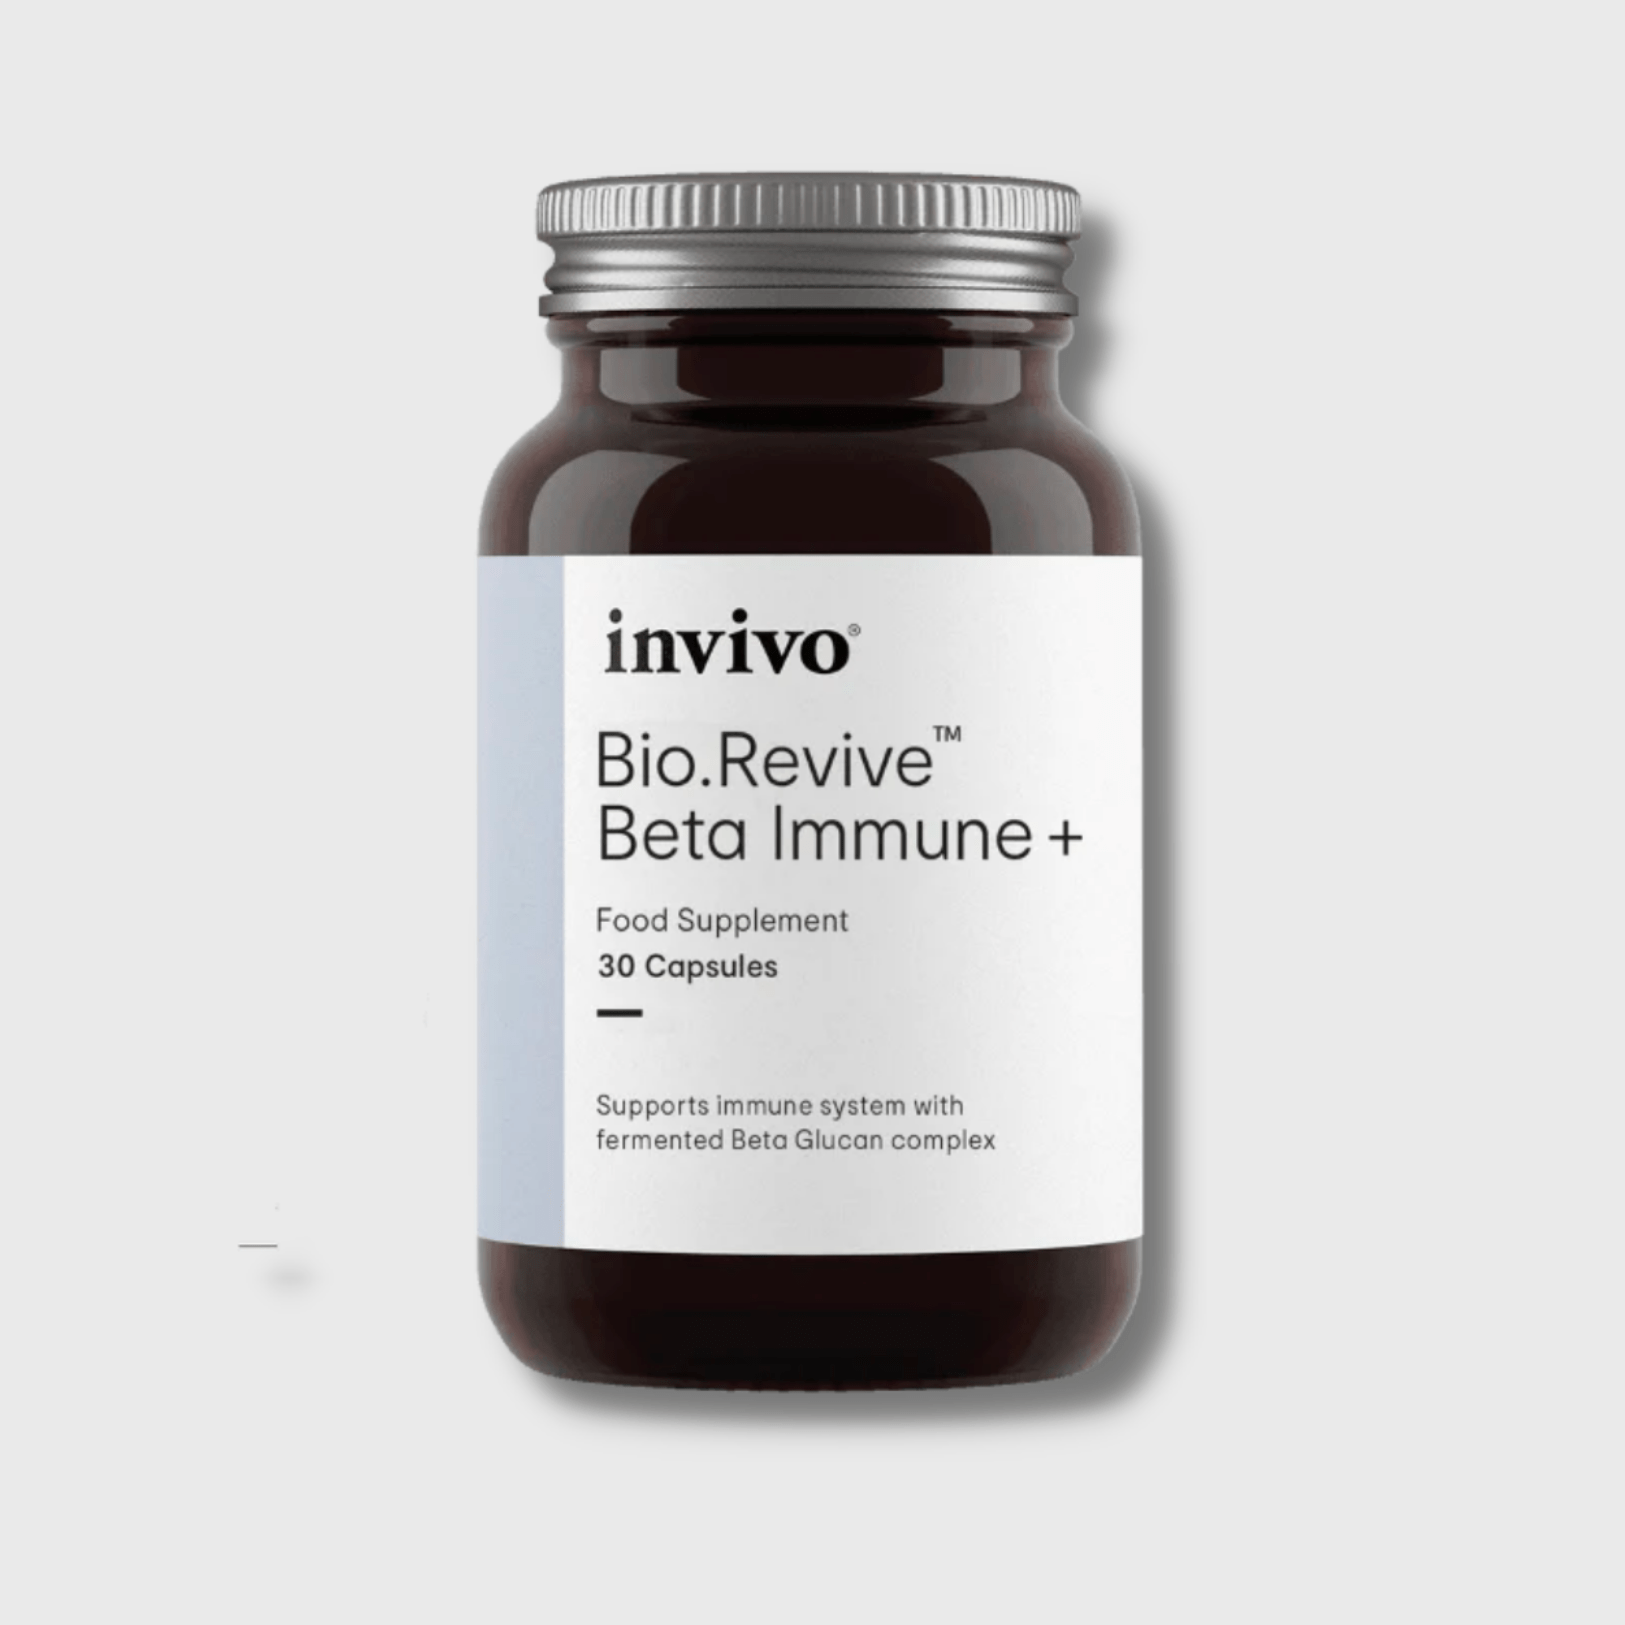 Bio.Revive Beta Immune